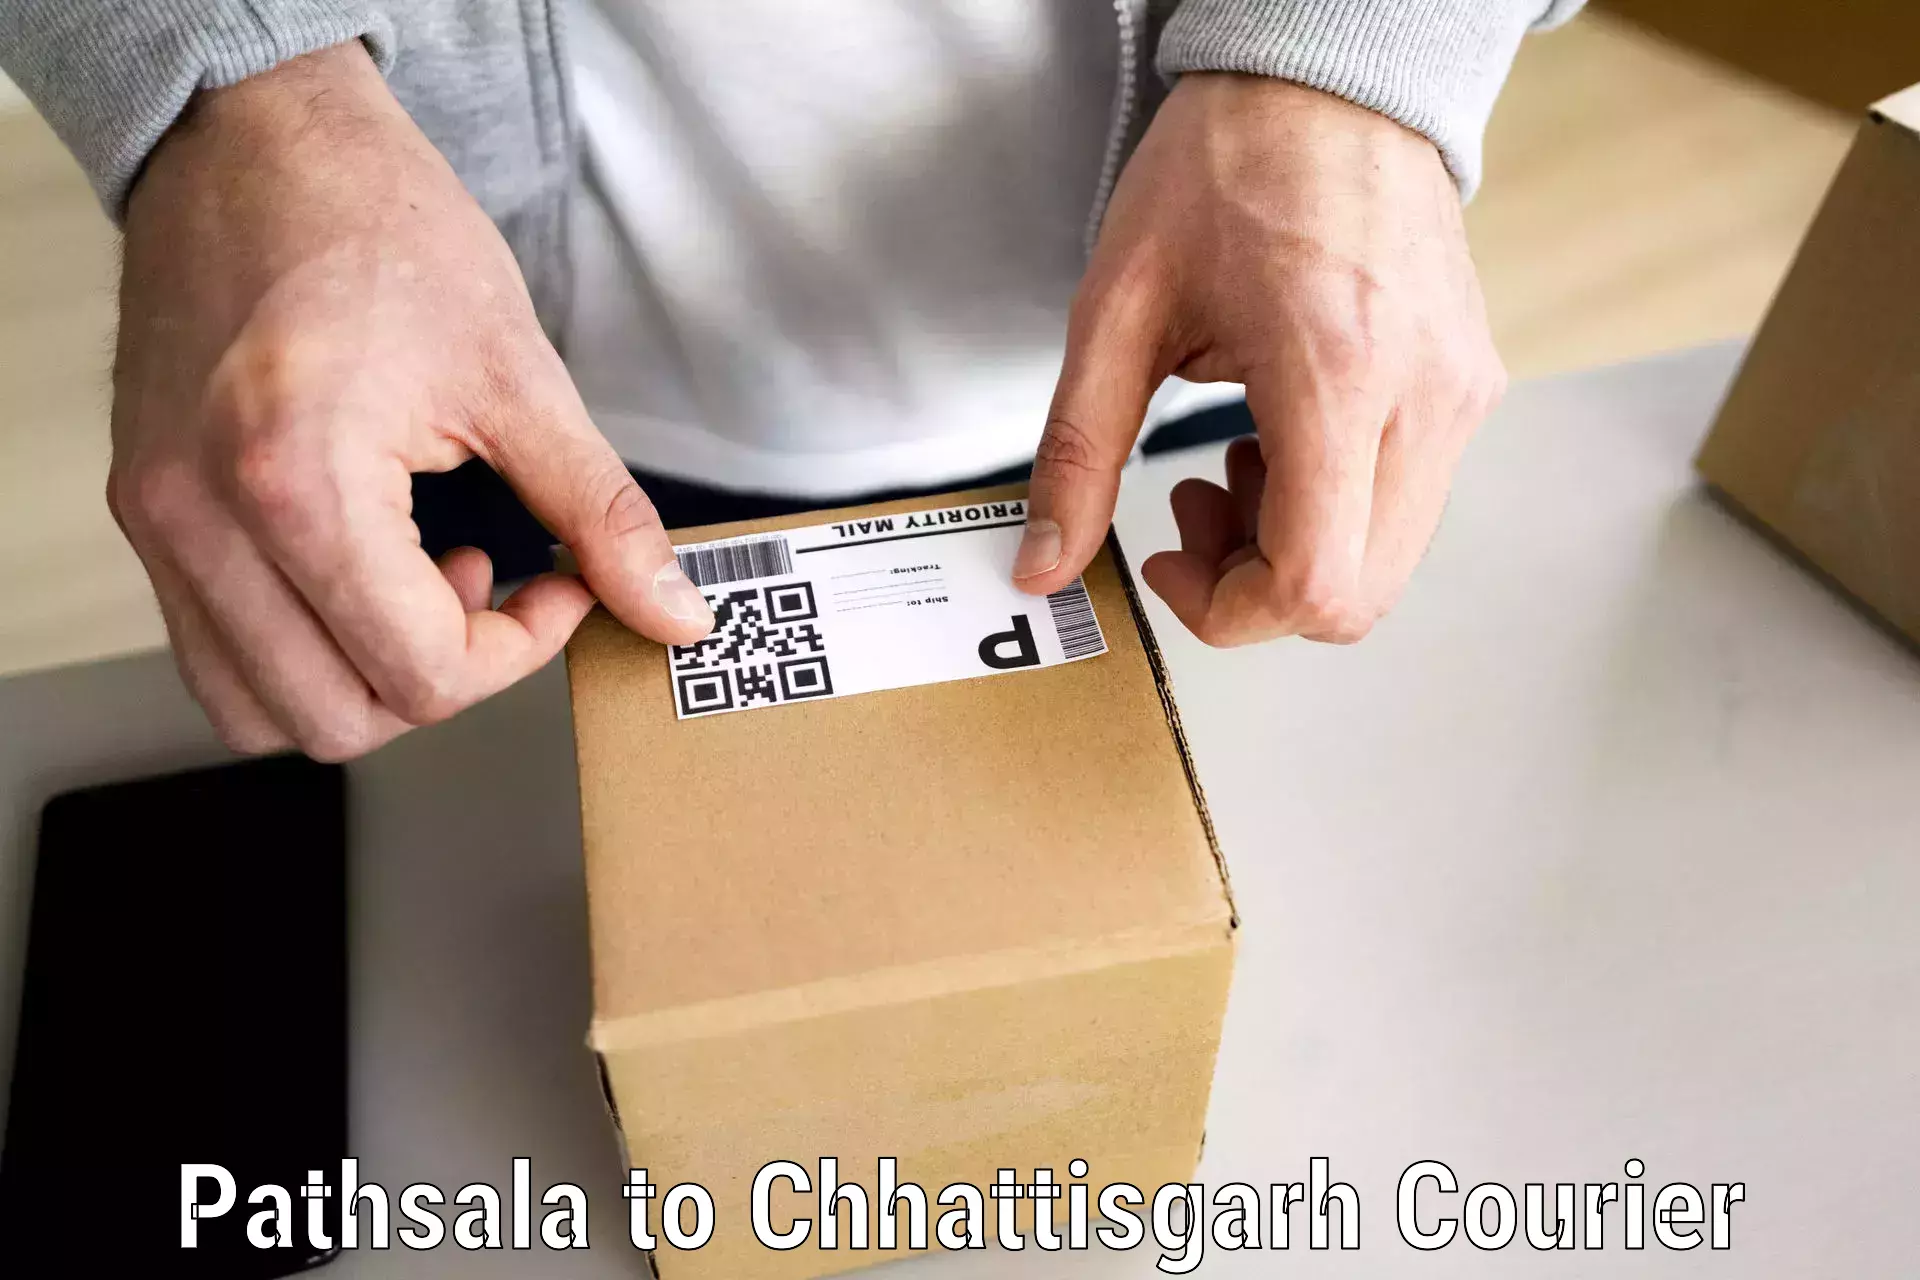 Quality moving company Pathsala to Chhattisgarh